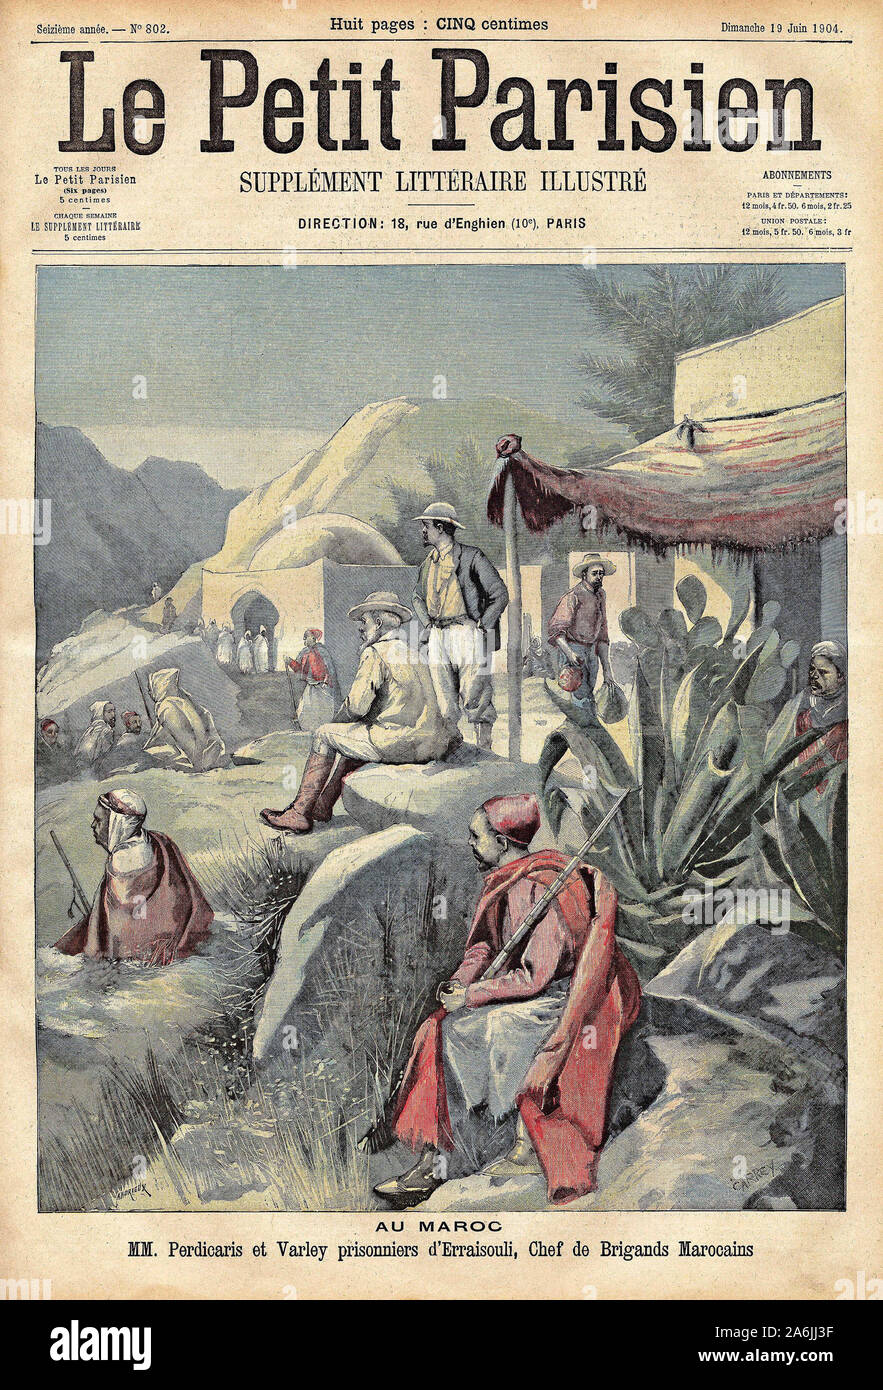 Deux francais sont prisonniers d'onu chef marocain. Il rotocalco in "Le Petit Parisien", le 19/06/1904. Foto Stock